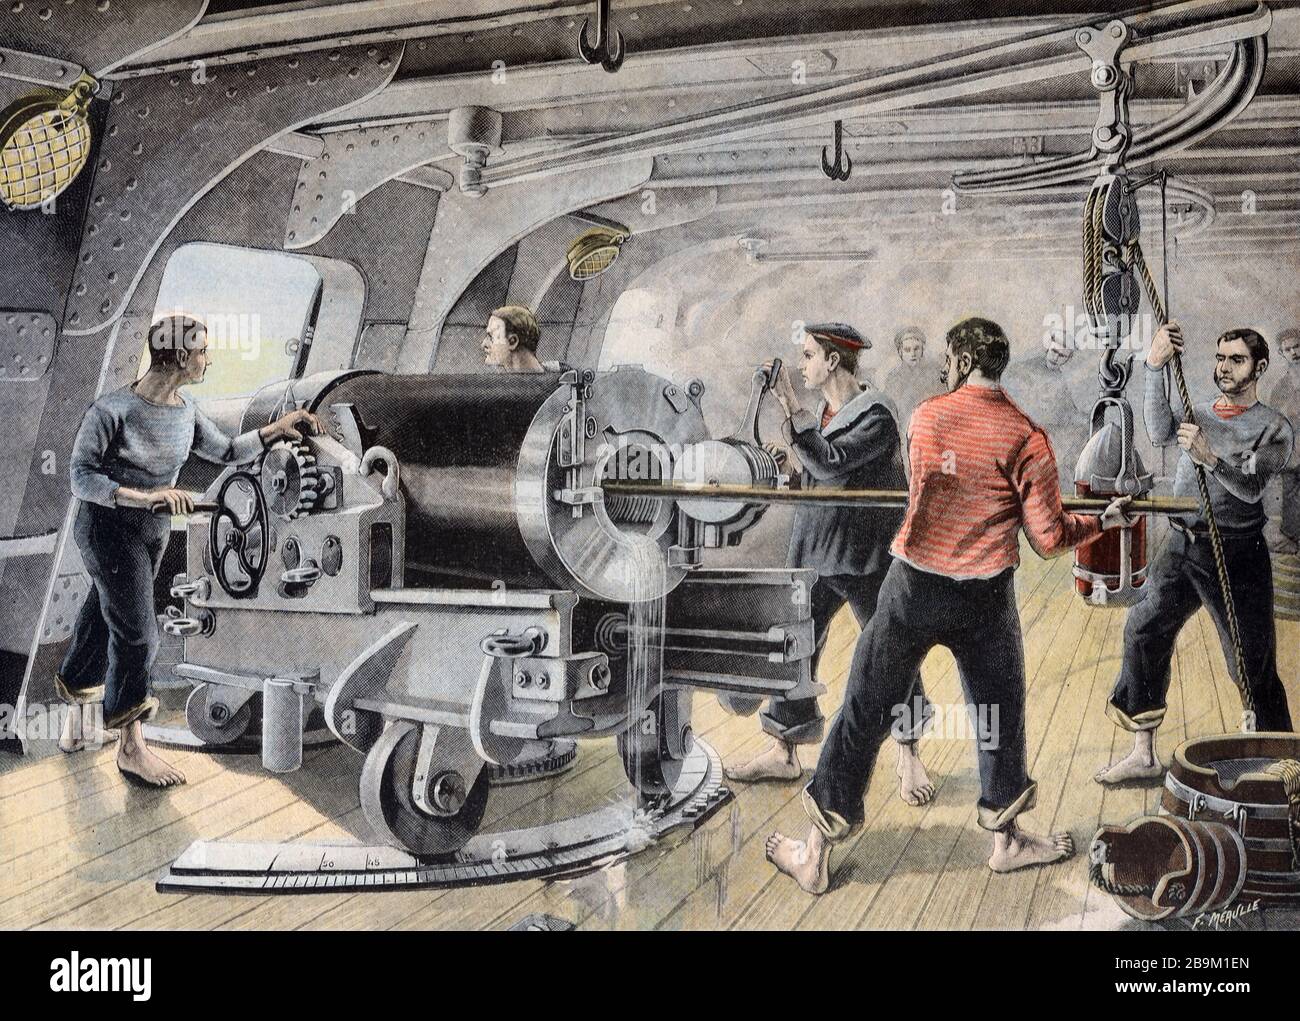 Illustration de Sea Battle & Warship ou Gunboat de la marine américaine avec les marins tir Cannon ou Big Gun pendant la guerre hispano-américaine 1898 Banque D'Images